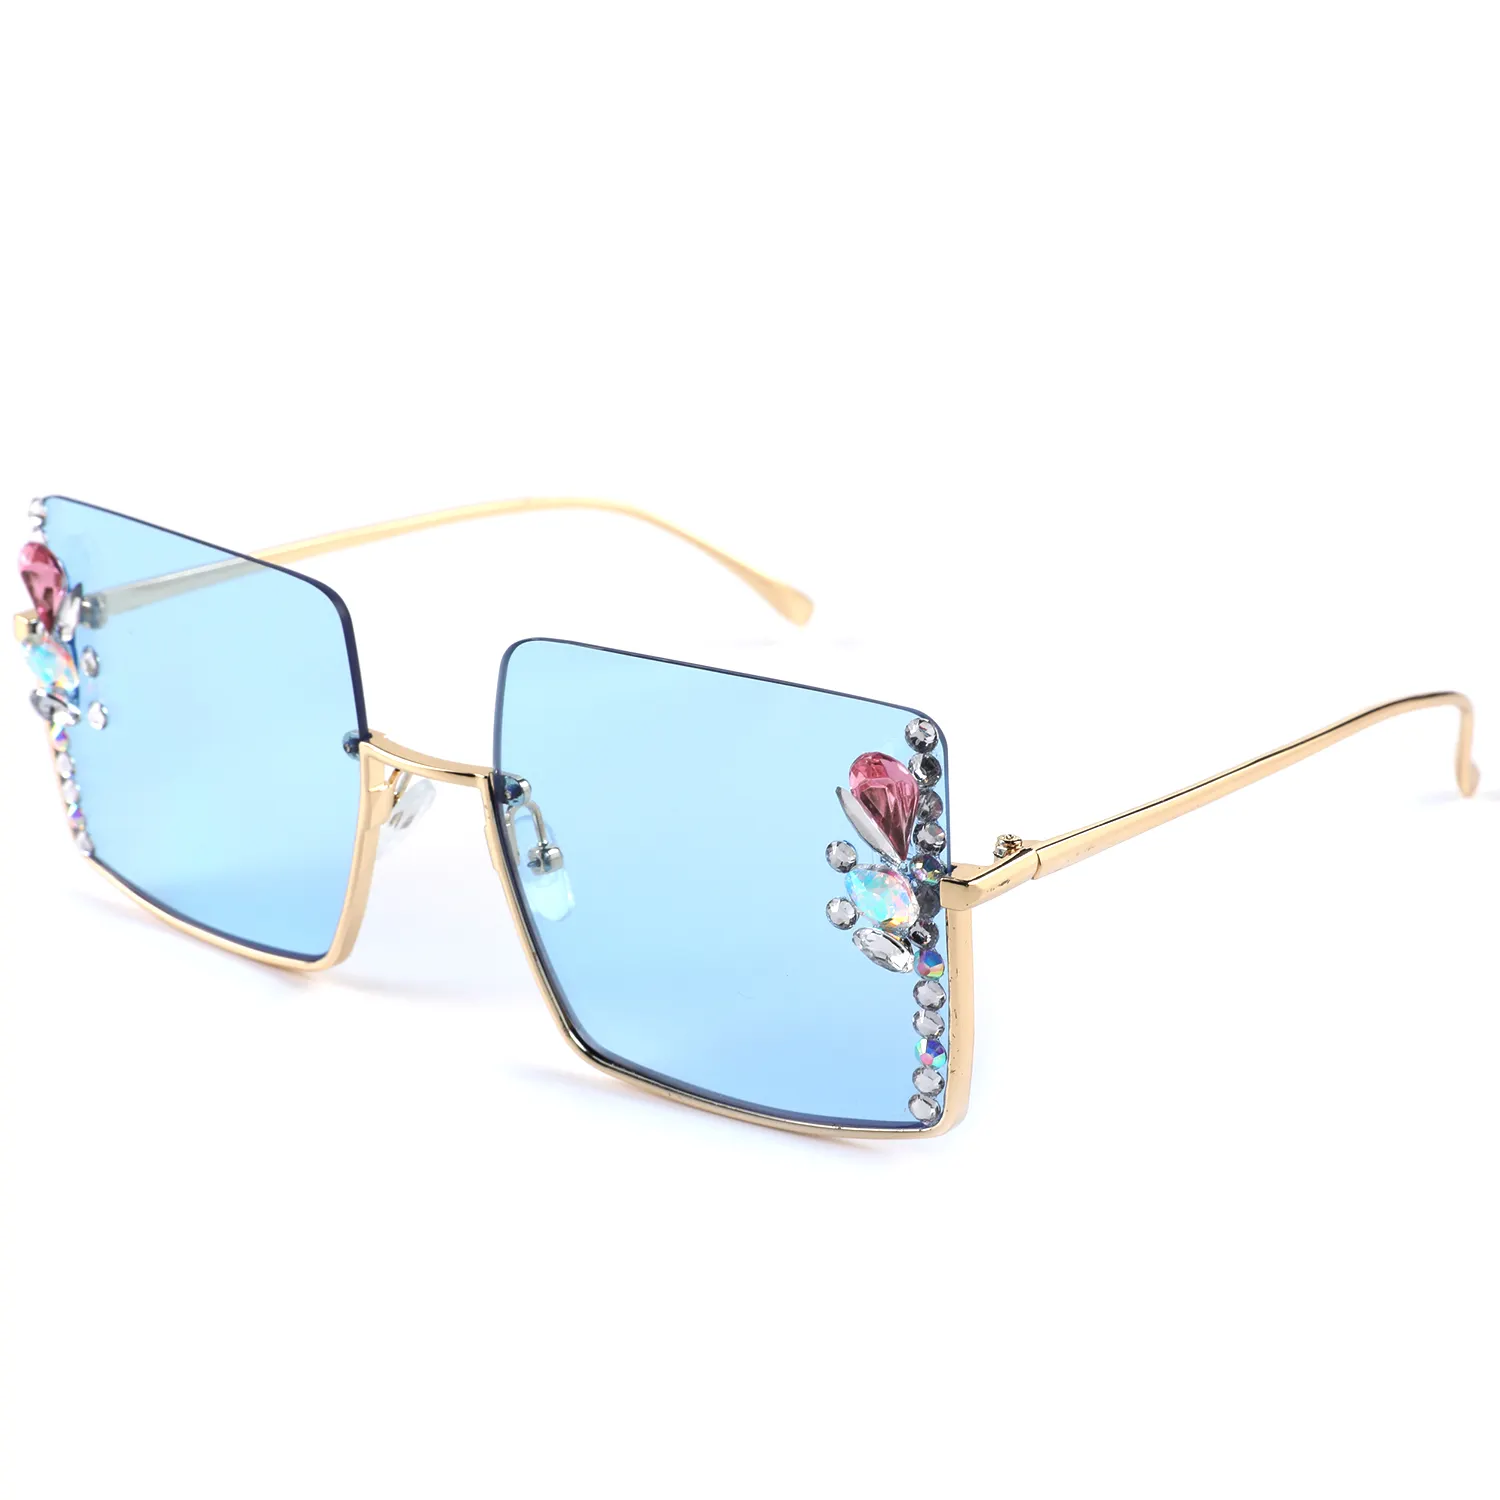 Modetrend heiße Mädchen Straßenfoto im Freien fahren Grenzgrenze-sonnenbrille halbrahmen elegante Sonnenbrille mit Diamanten